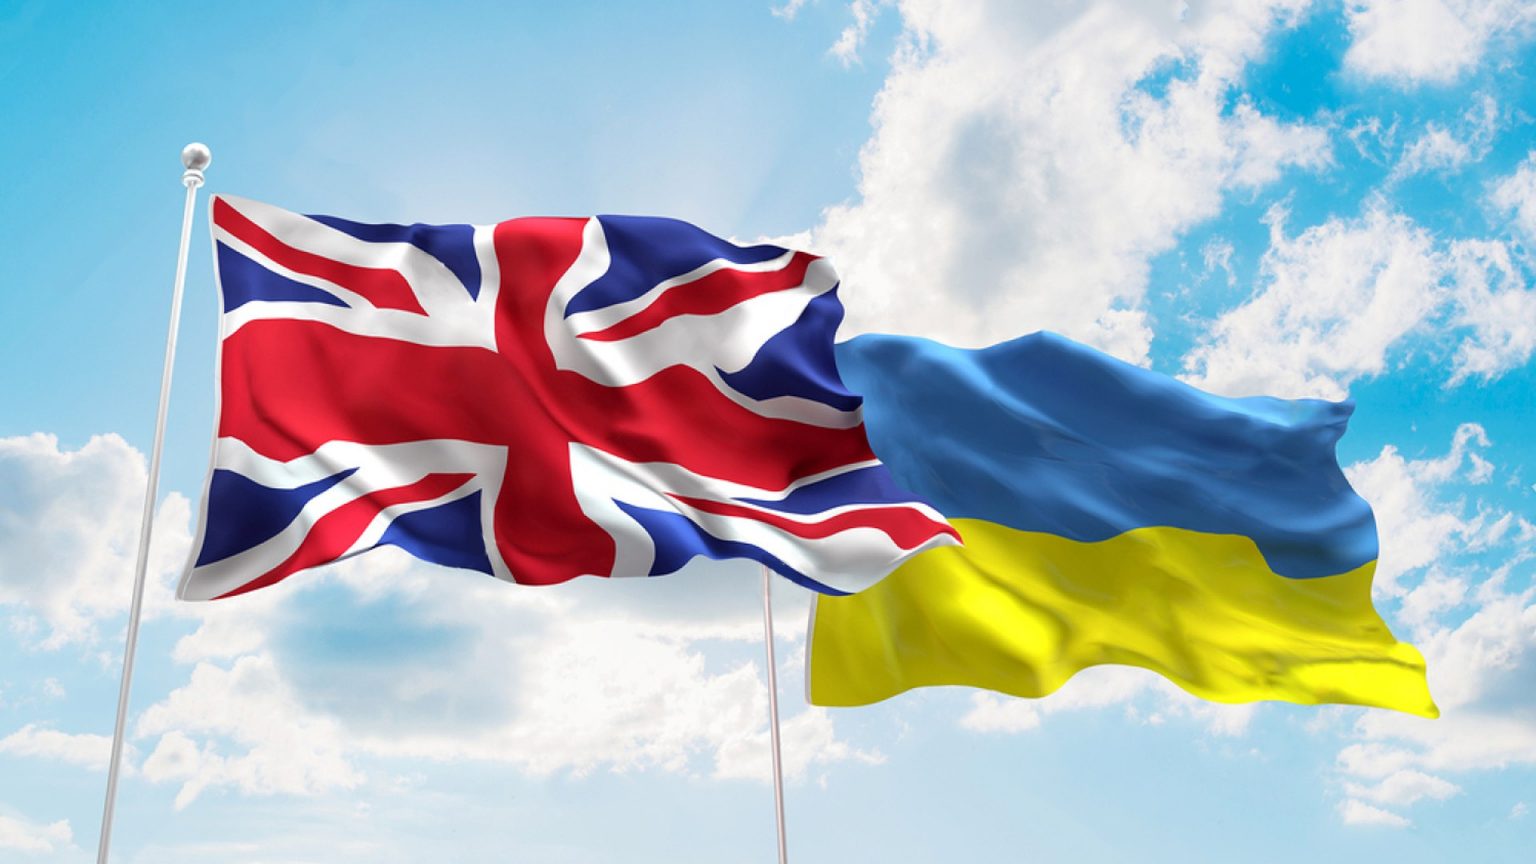 Մեծ Բրիտանիան Ուկրաինային ռազմական օգնության նոր փաթեթ կտրամադրի